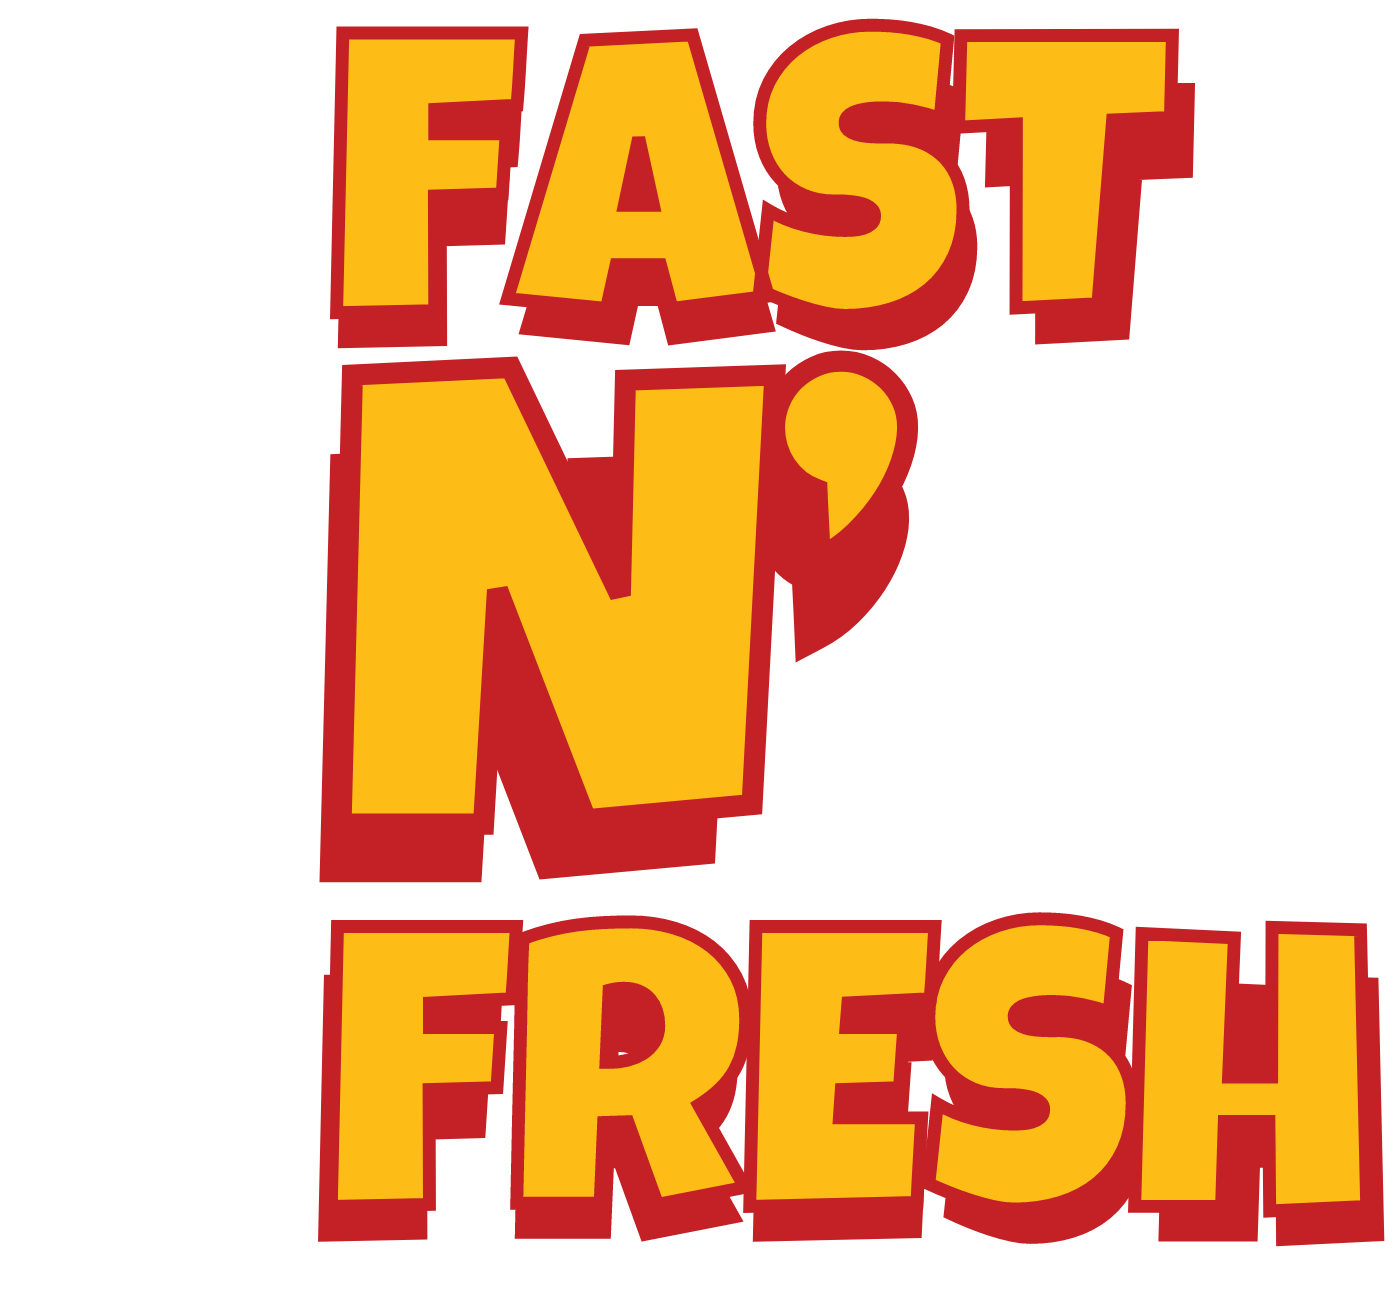 Fast N Fresh